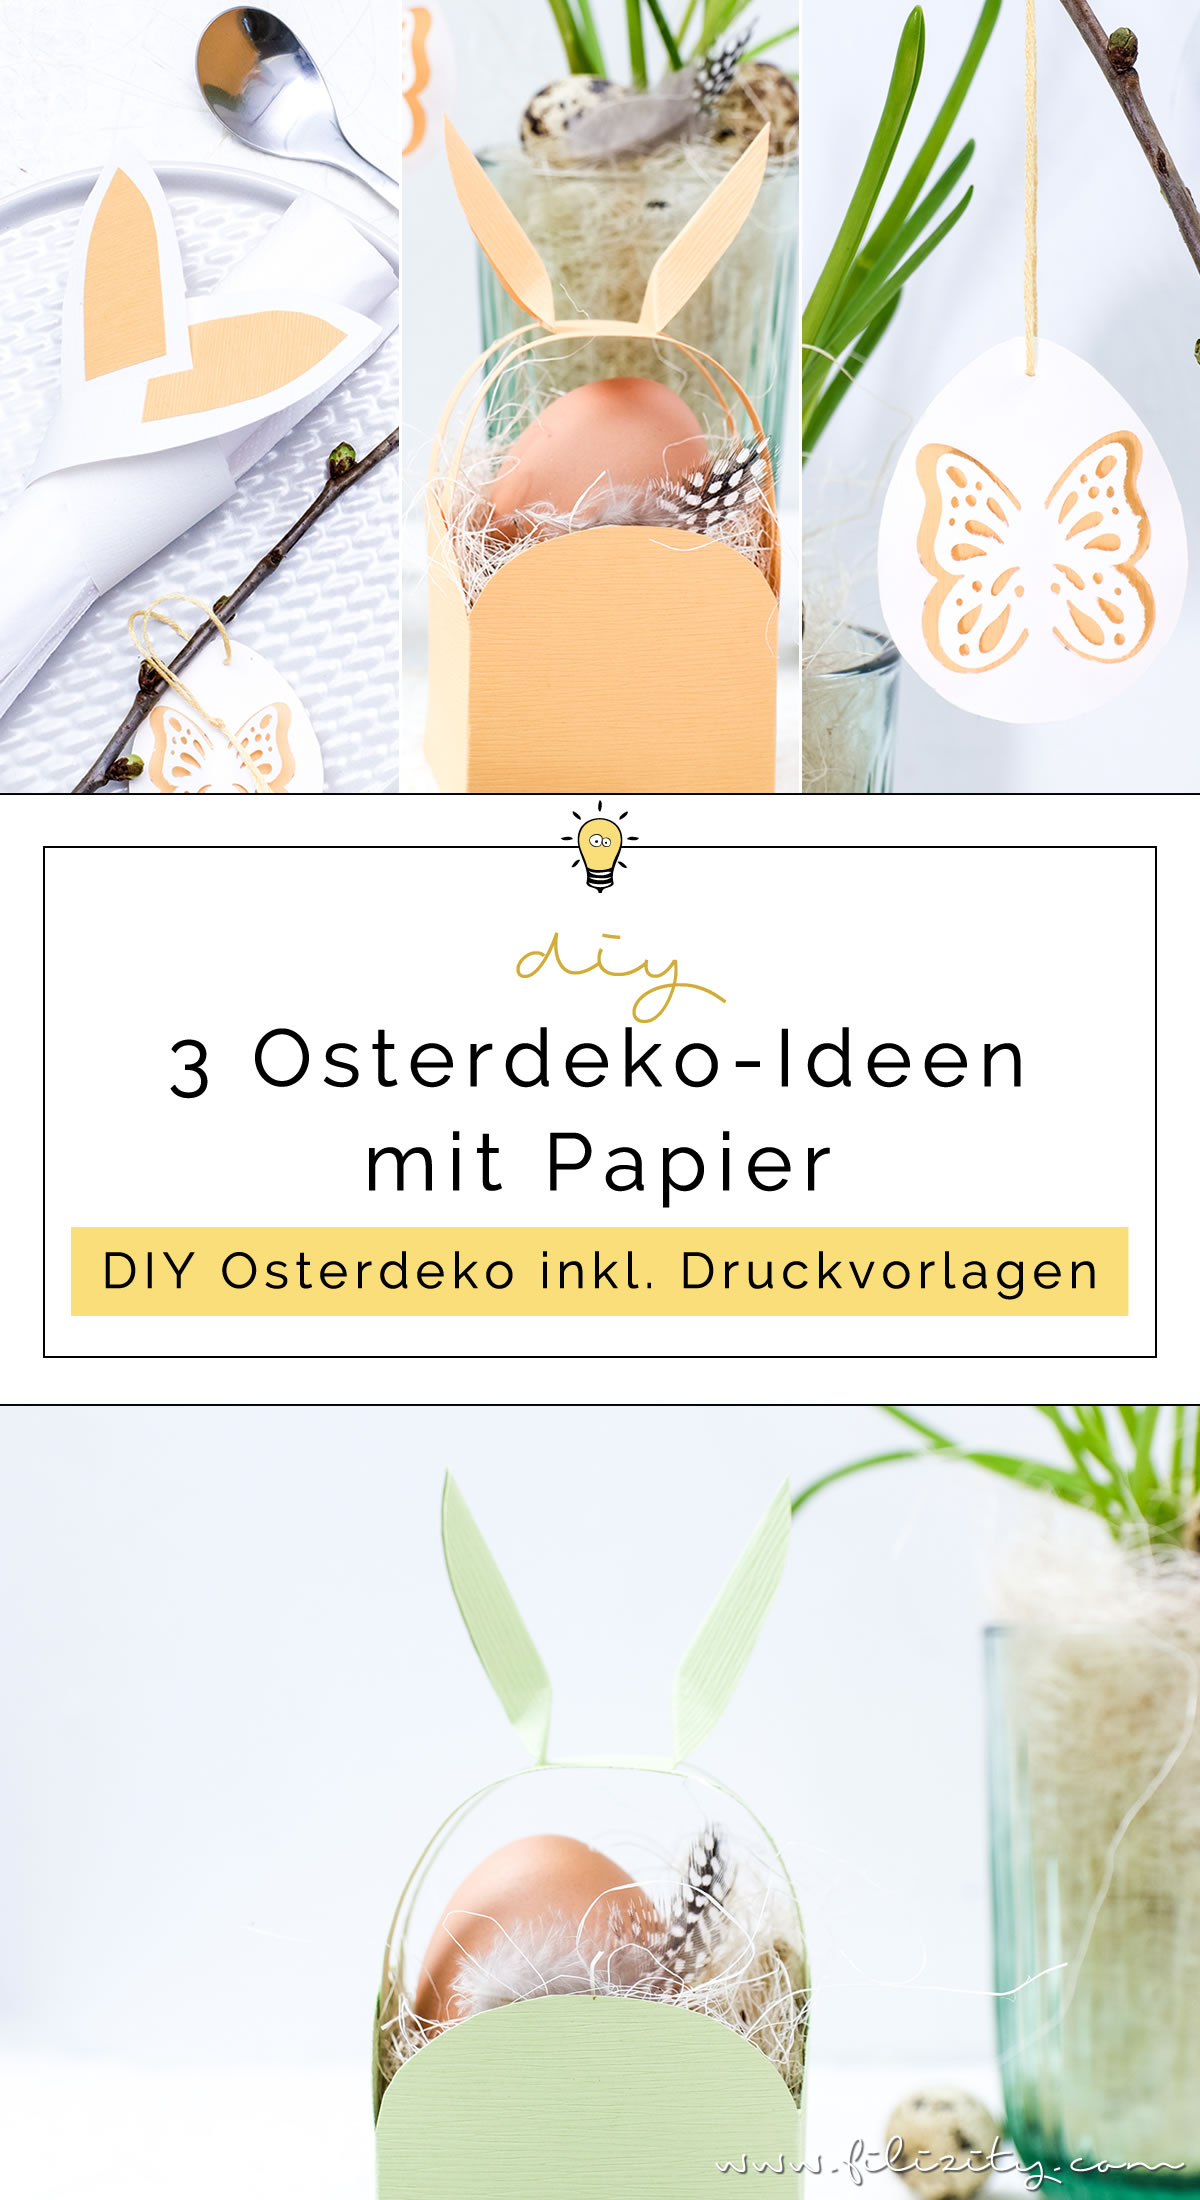 3 DIY Osterdeko Ideen mit Papier selber machen | Osterkorb mit Hasenohren, Osterei-Anhänger, Serviettenringe mit Hasenohren | Filizity.com | DIY-Blog aus dem Rheinland #ostern #osterdeko #artoz